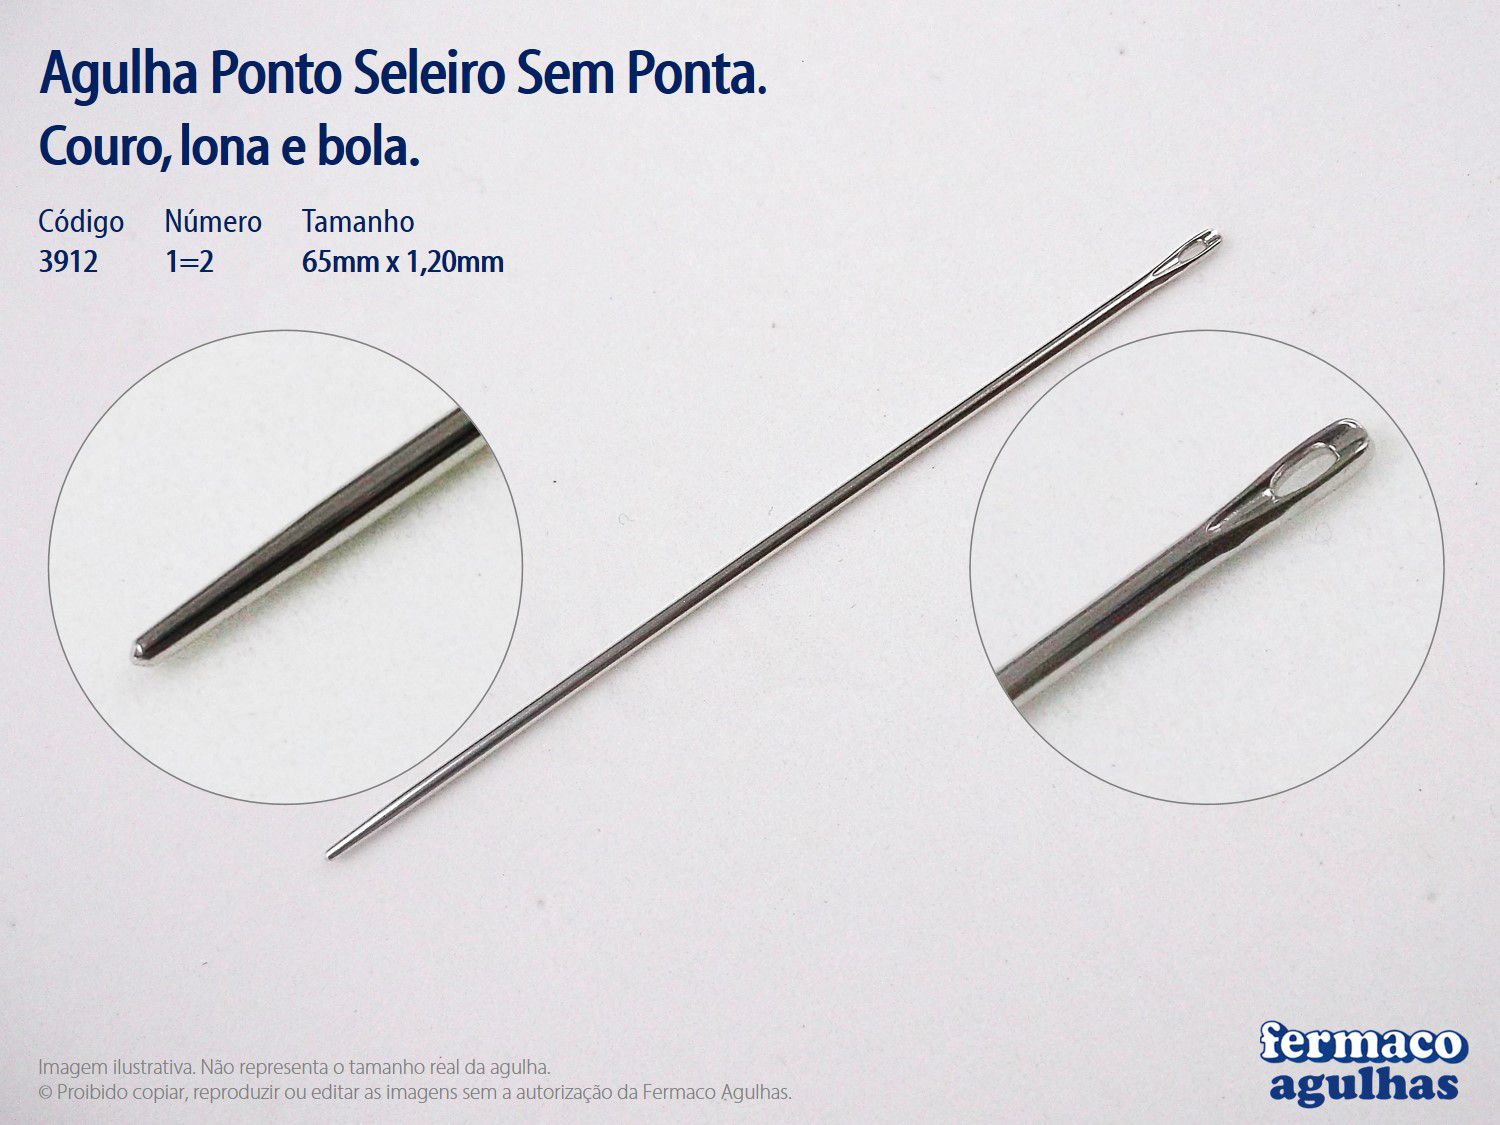 Agulha Ponto Seleiro Sem Ponta para Couro - Número 1=2 (6,5cm x 1,20mm).